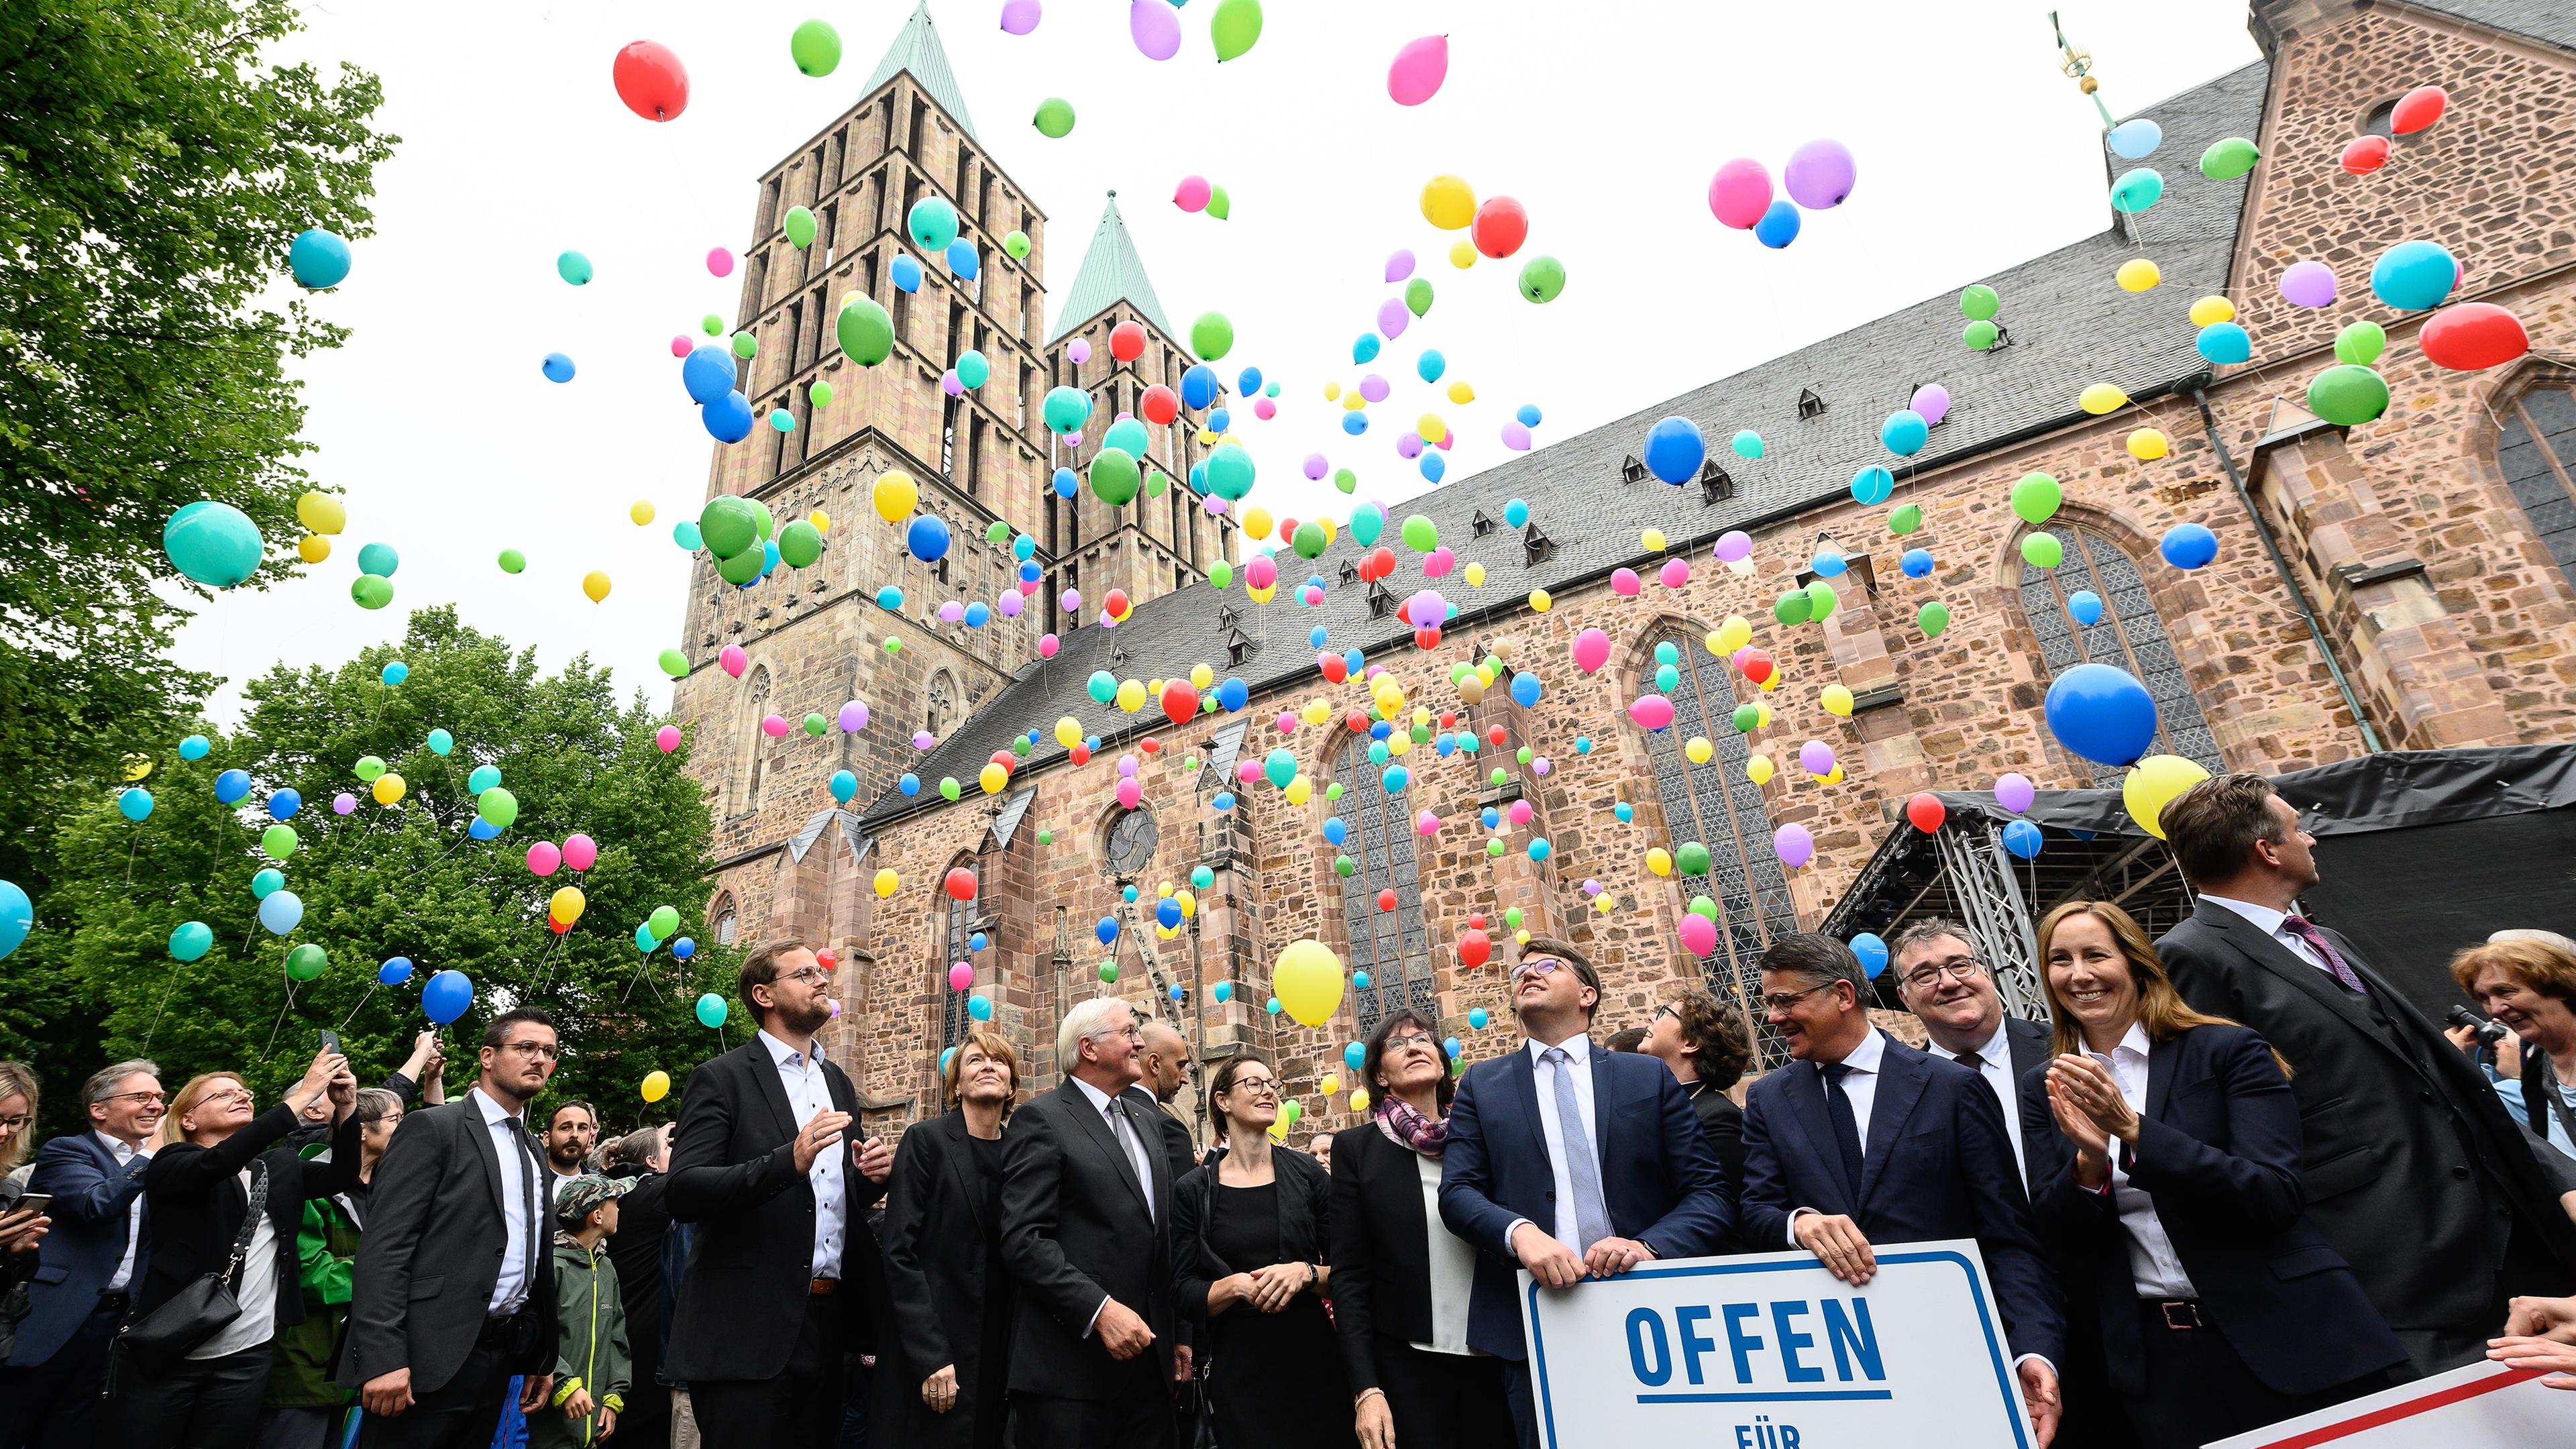 Menschen lassen bunte Ballons vor Kirche steigen 